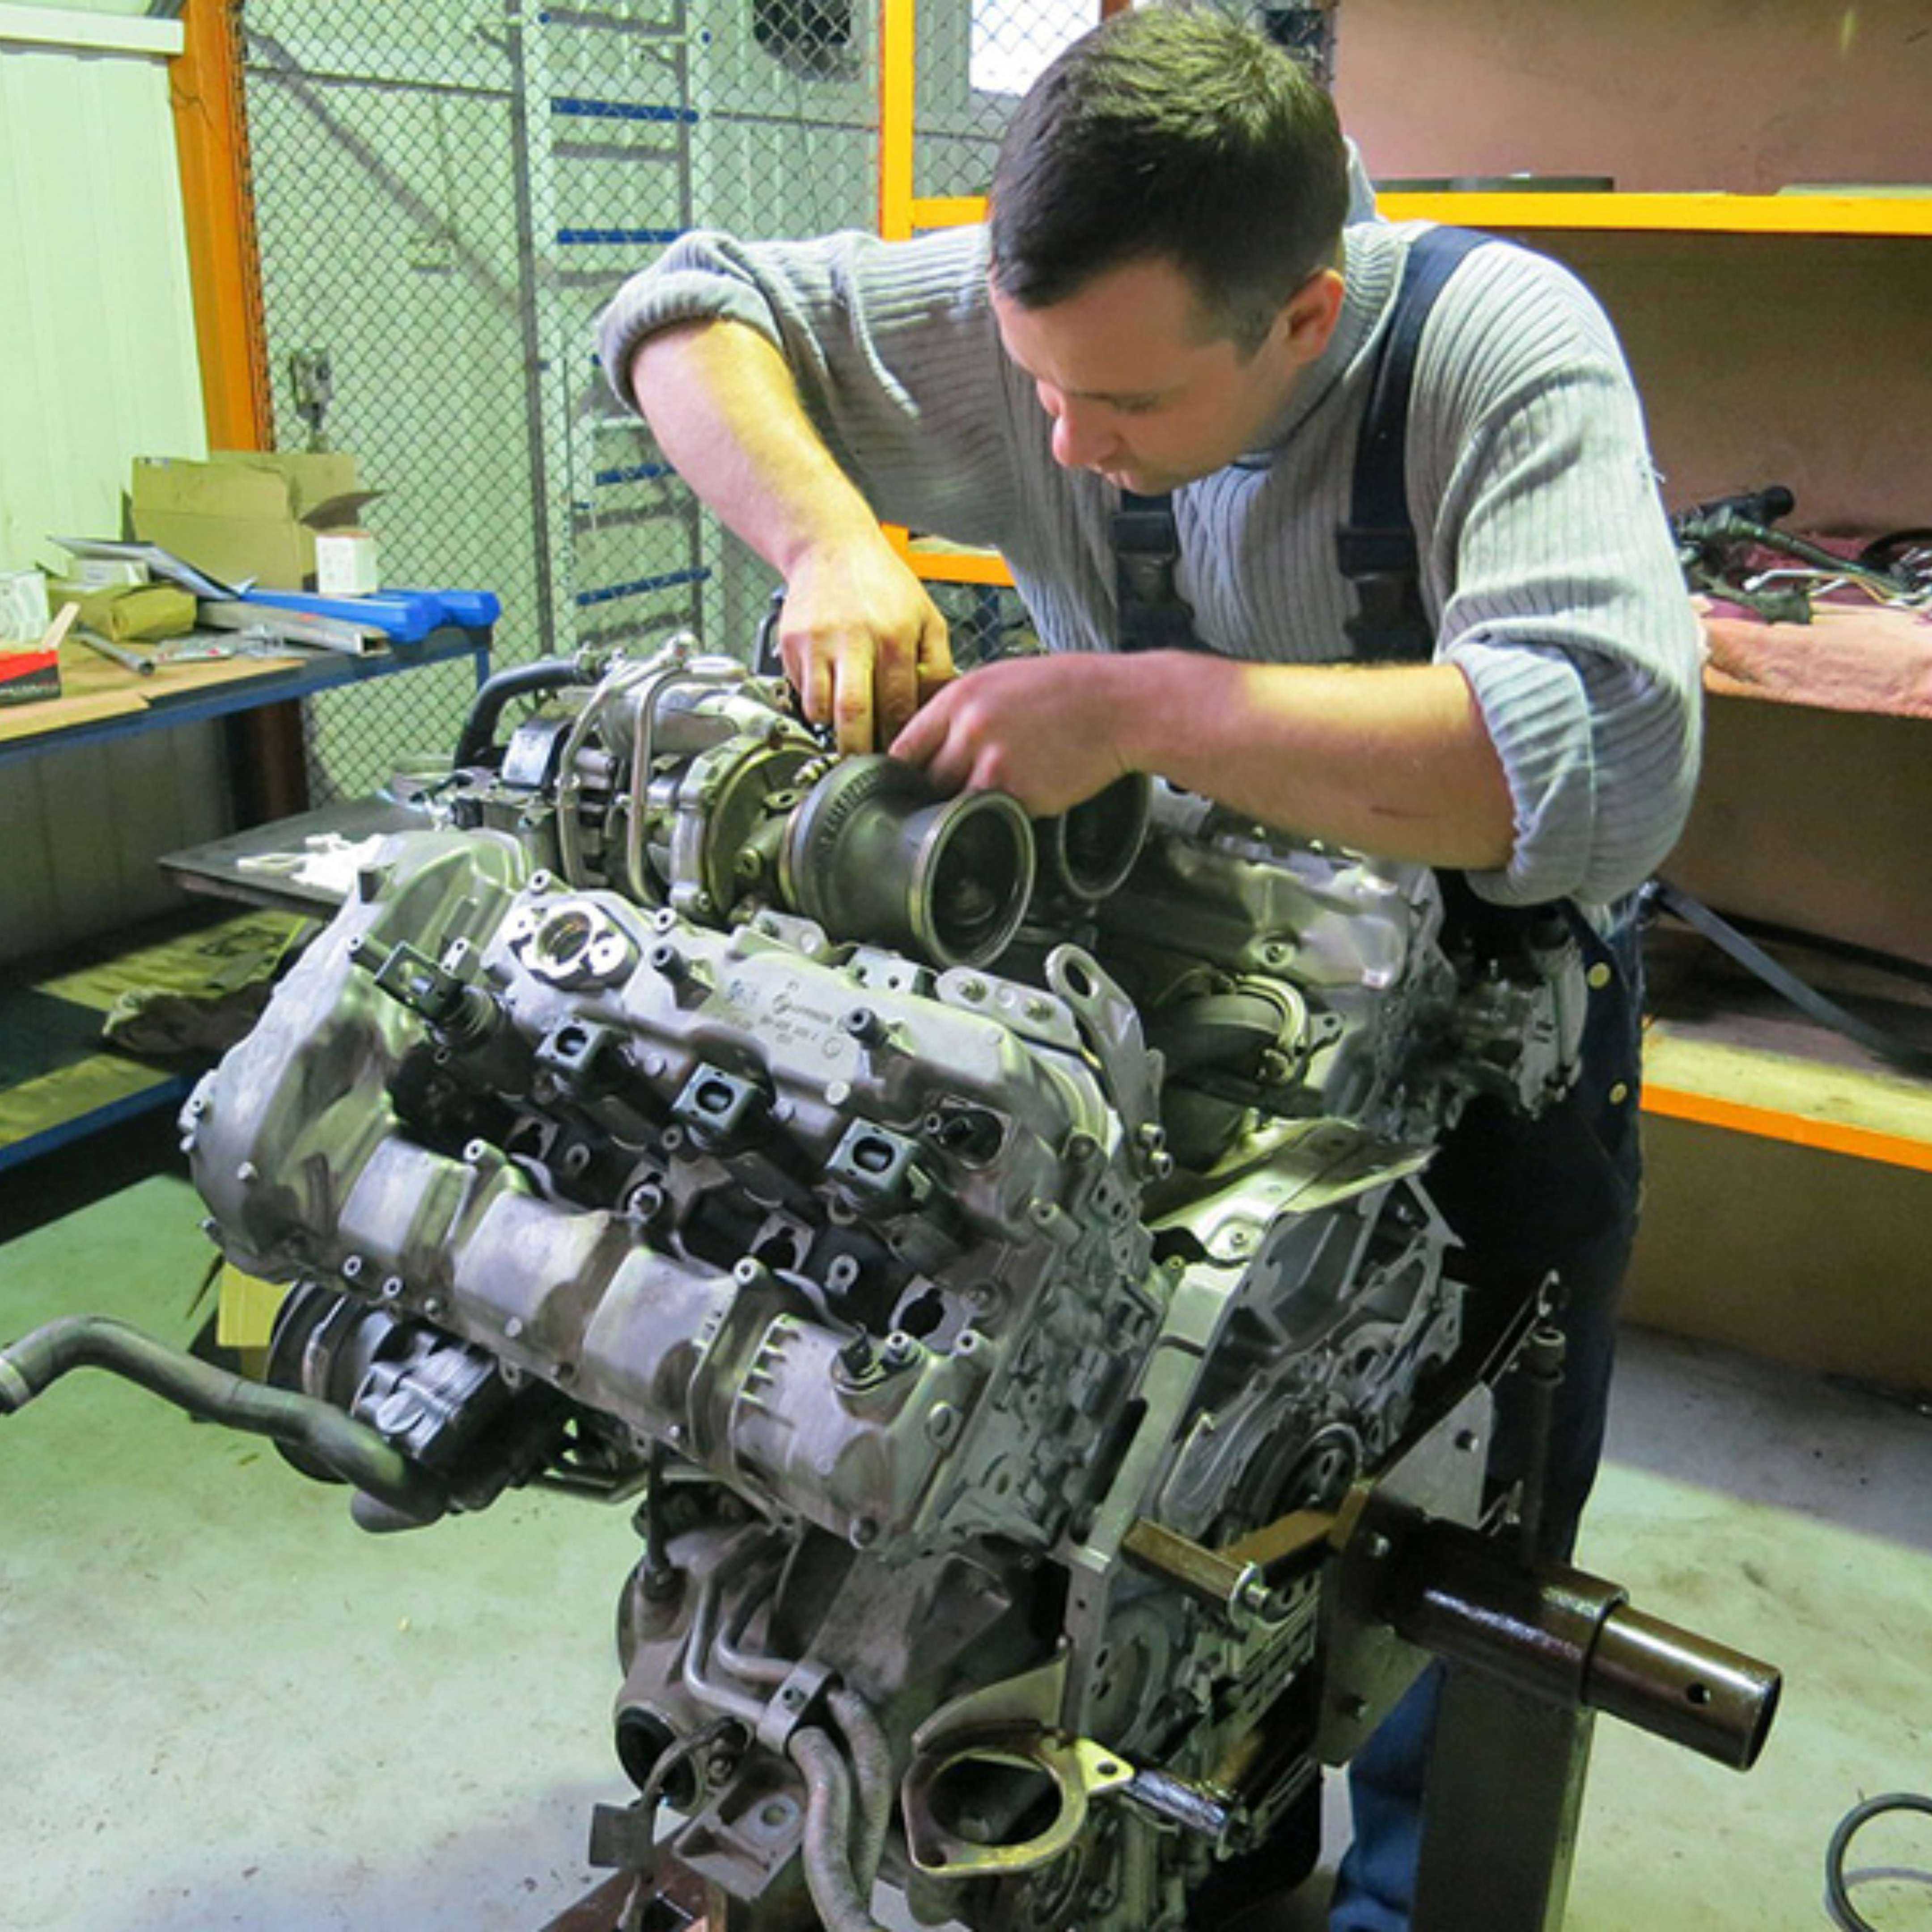 Капитальный ремонт двигателя своими руками: пошаговая инструкция